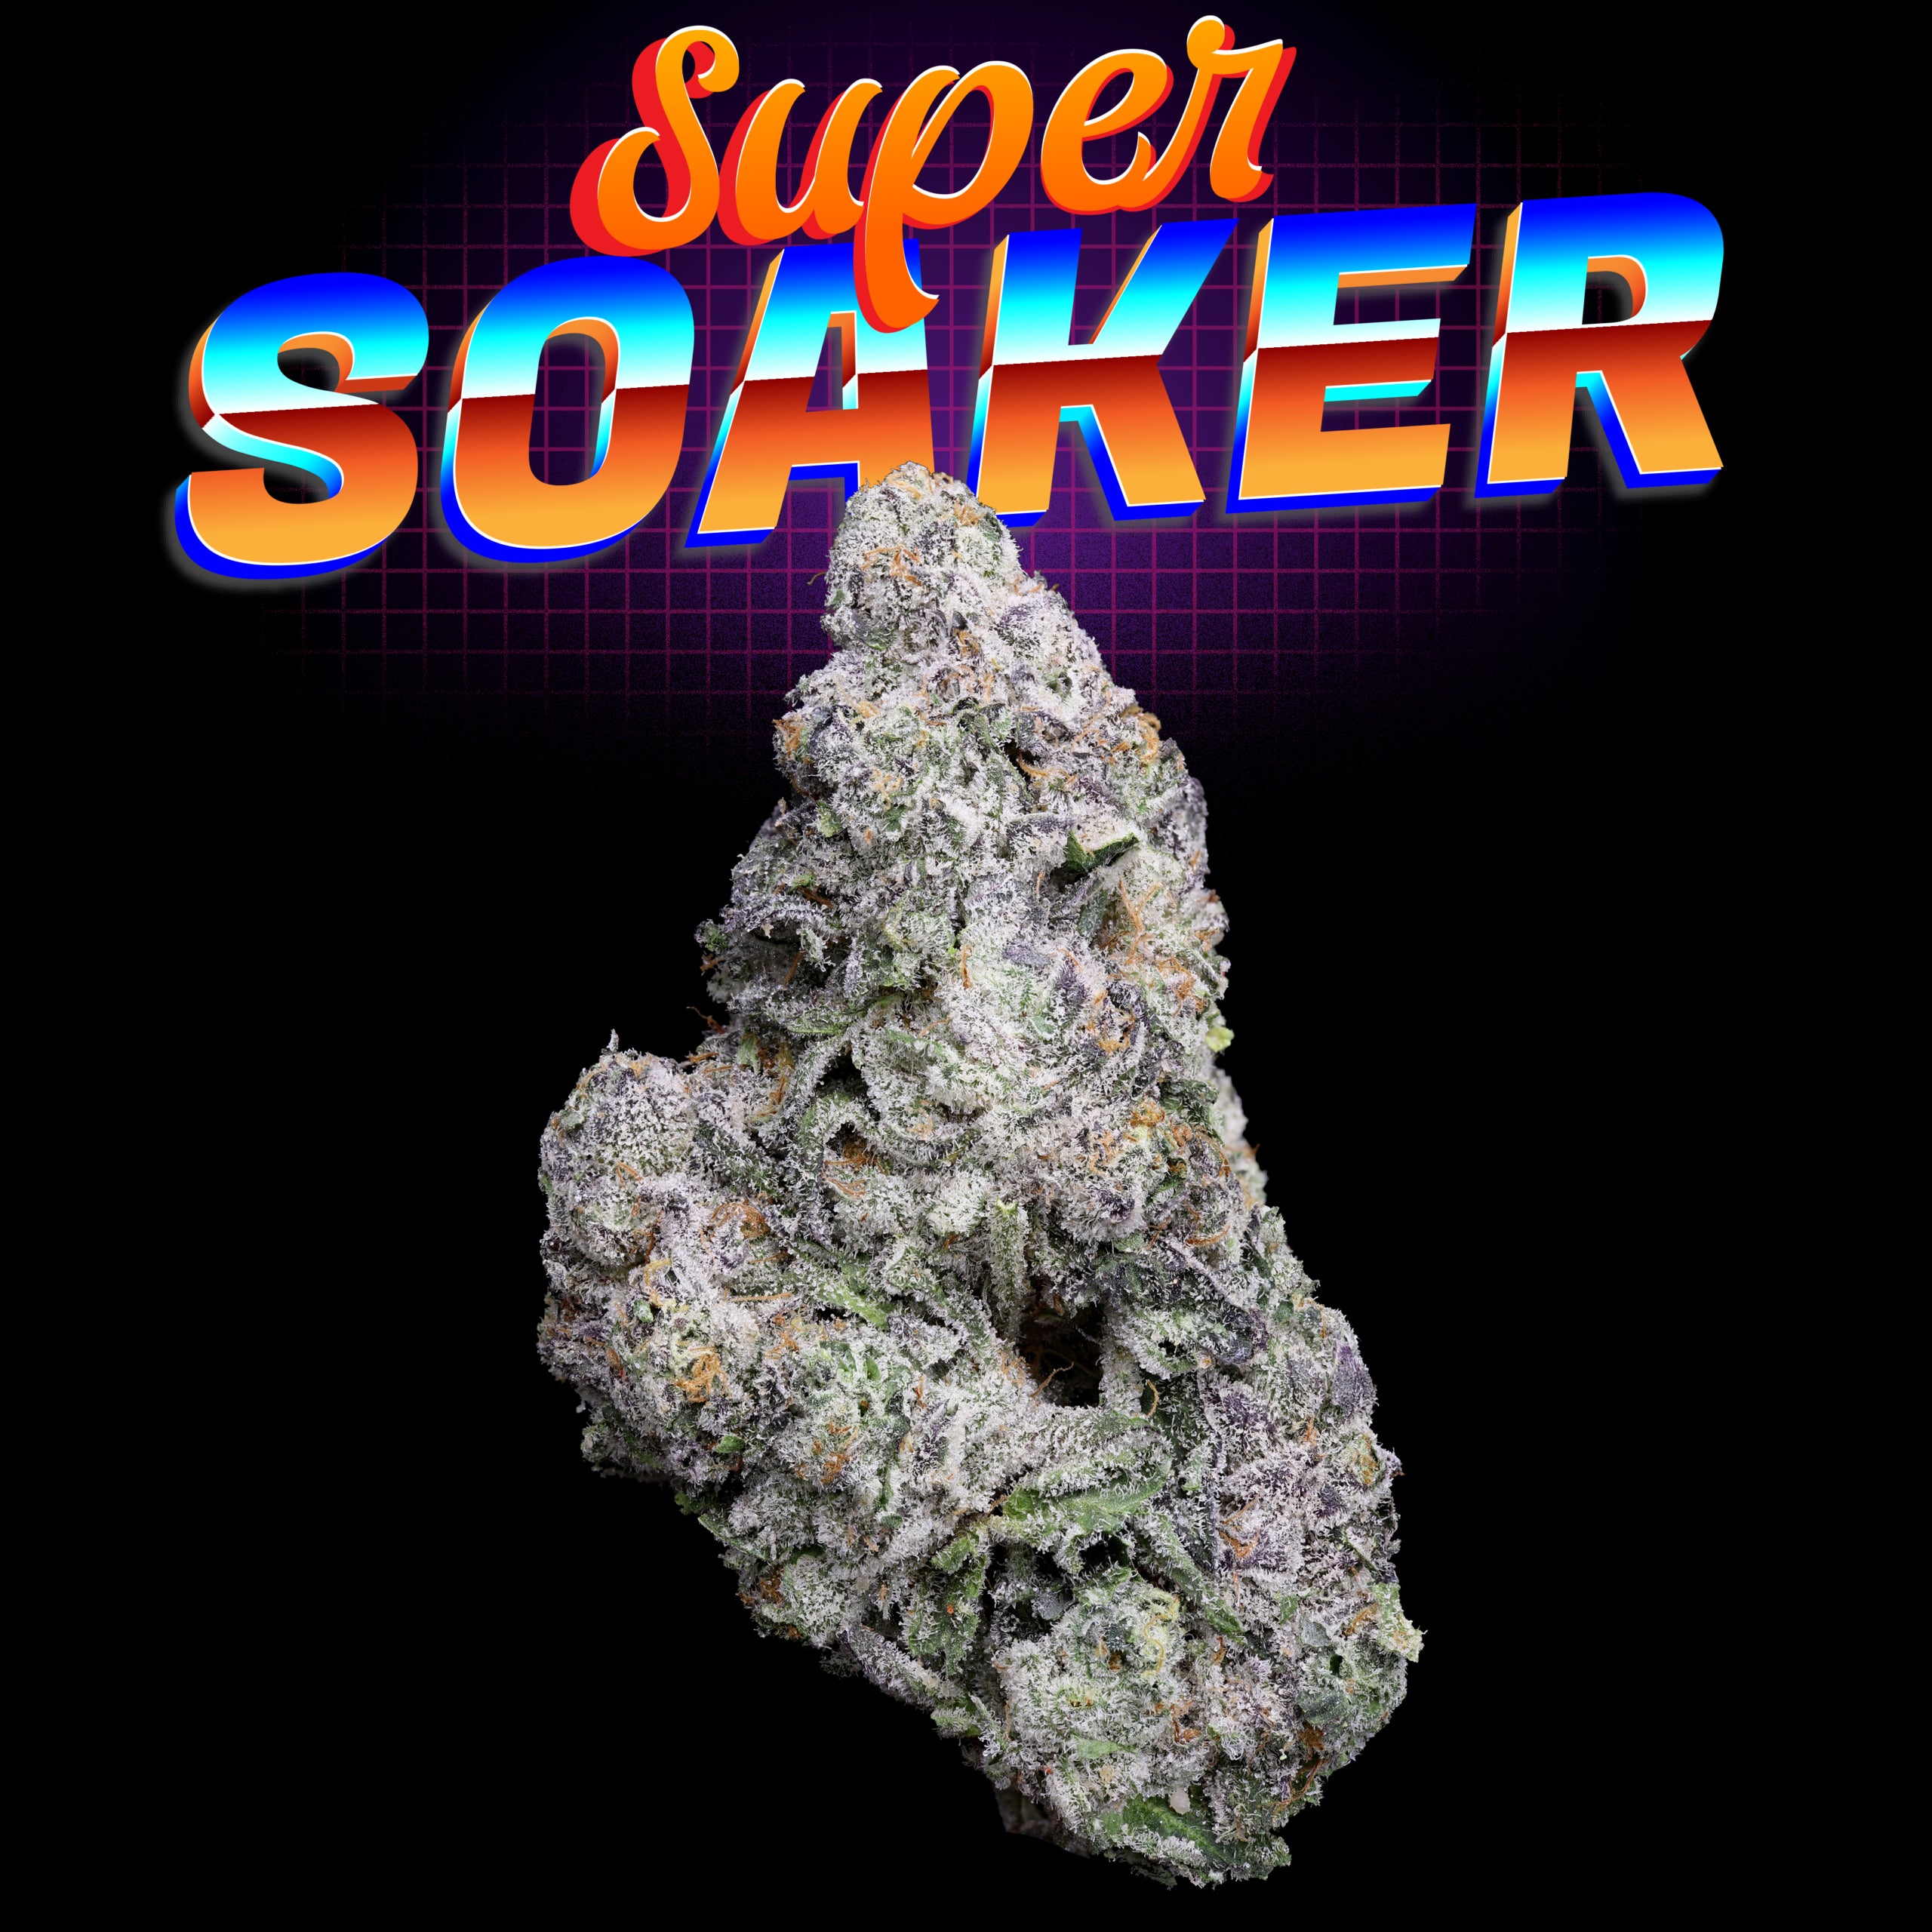 Super Soaker nug